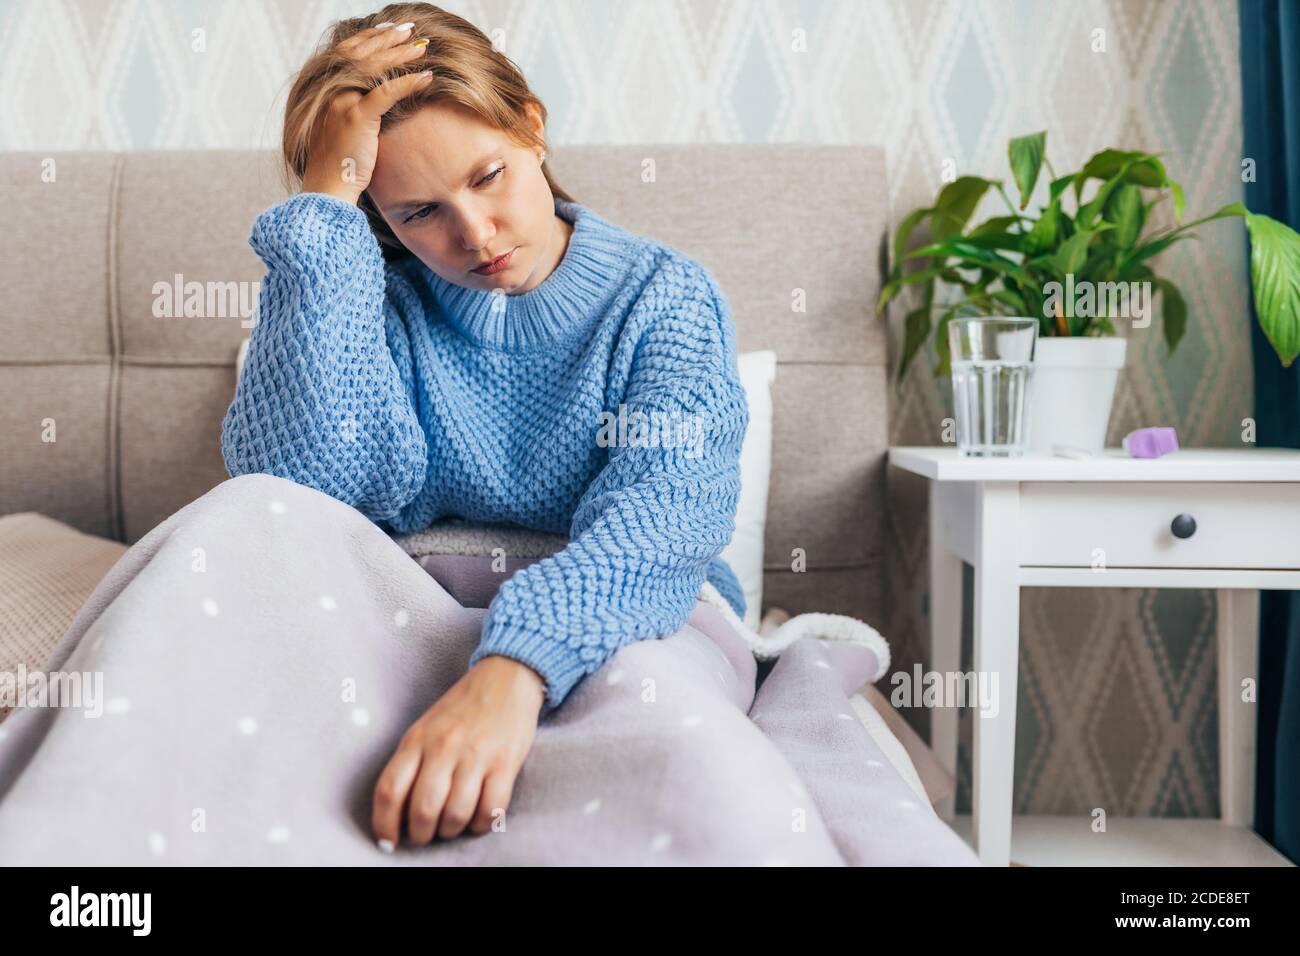 Giovane donna bionda che soffre di depressione seduta n letto su in caldo maglione. Solitudine, tristezza, divorziare Foto Stock